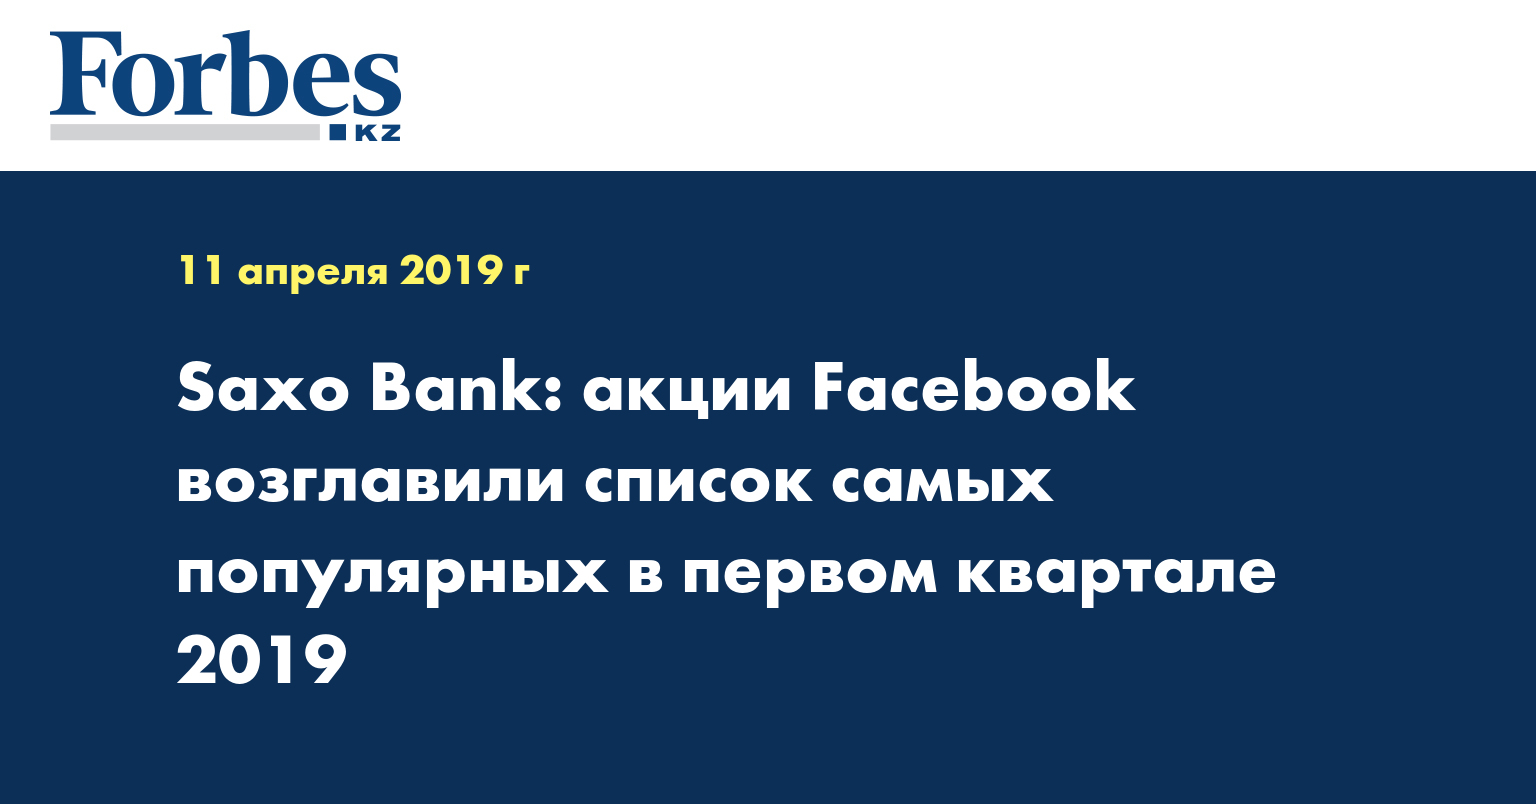 Saxo Bank: акции Facebook возглавили список самых популярных в первом квартале 2019 